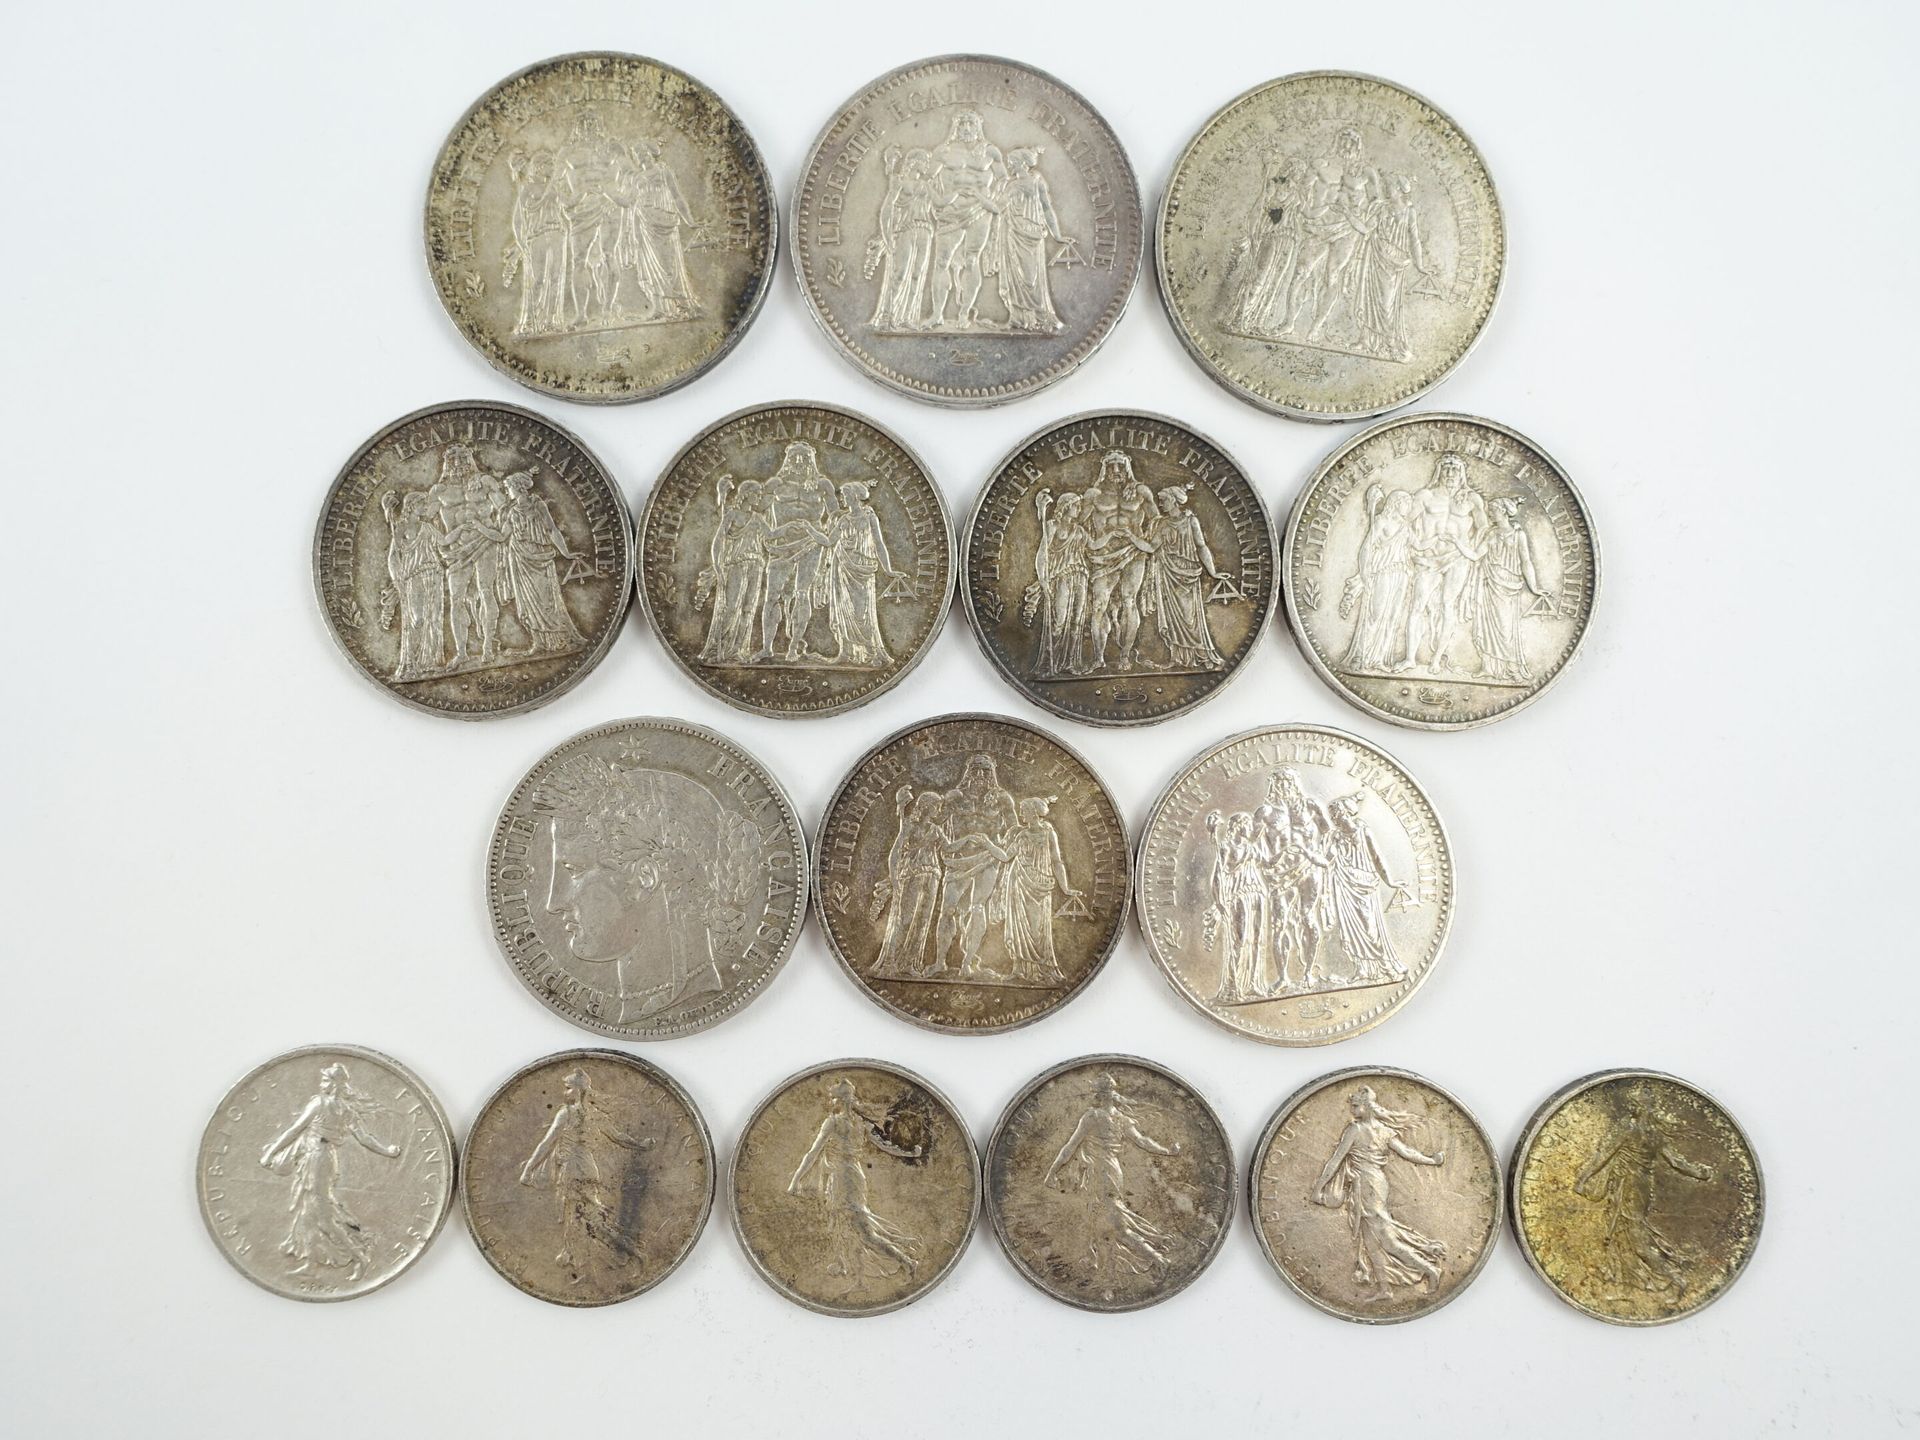 Null 三枚50法郎的海格力斯型银币；六枚10法郎的海格力斯型银币；六枚5法郎的播种机型银币和一枚5法郎的塞勒斯型银币，巴黎1849年。重量 : 337 g